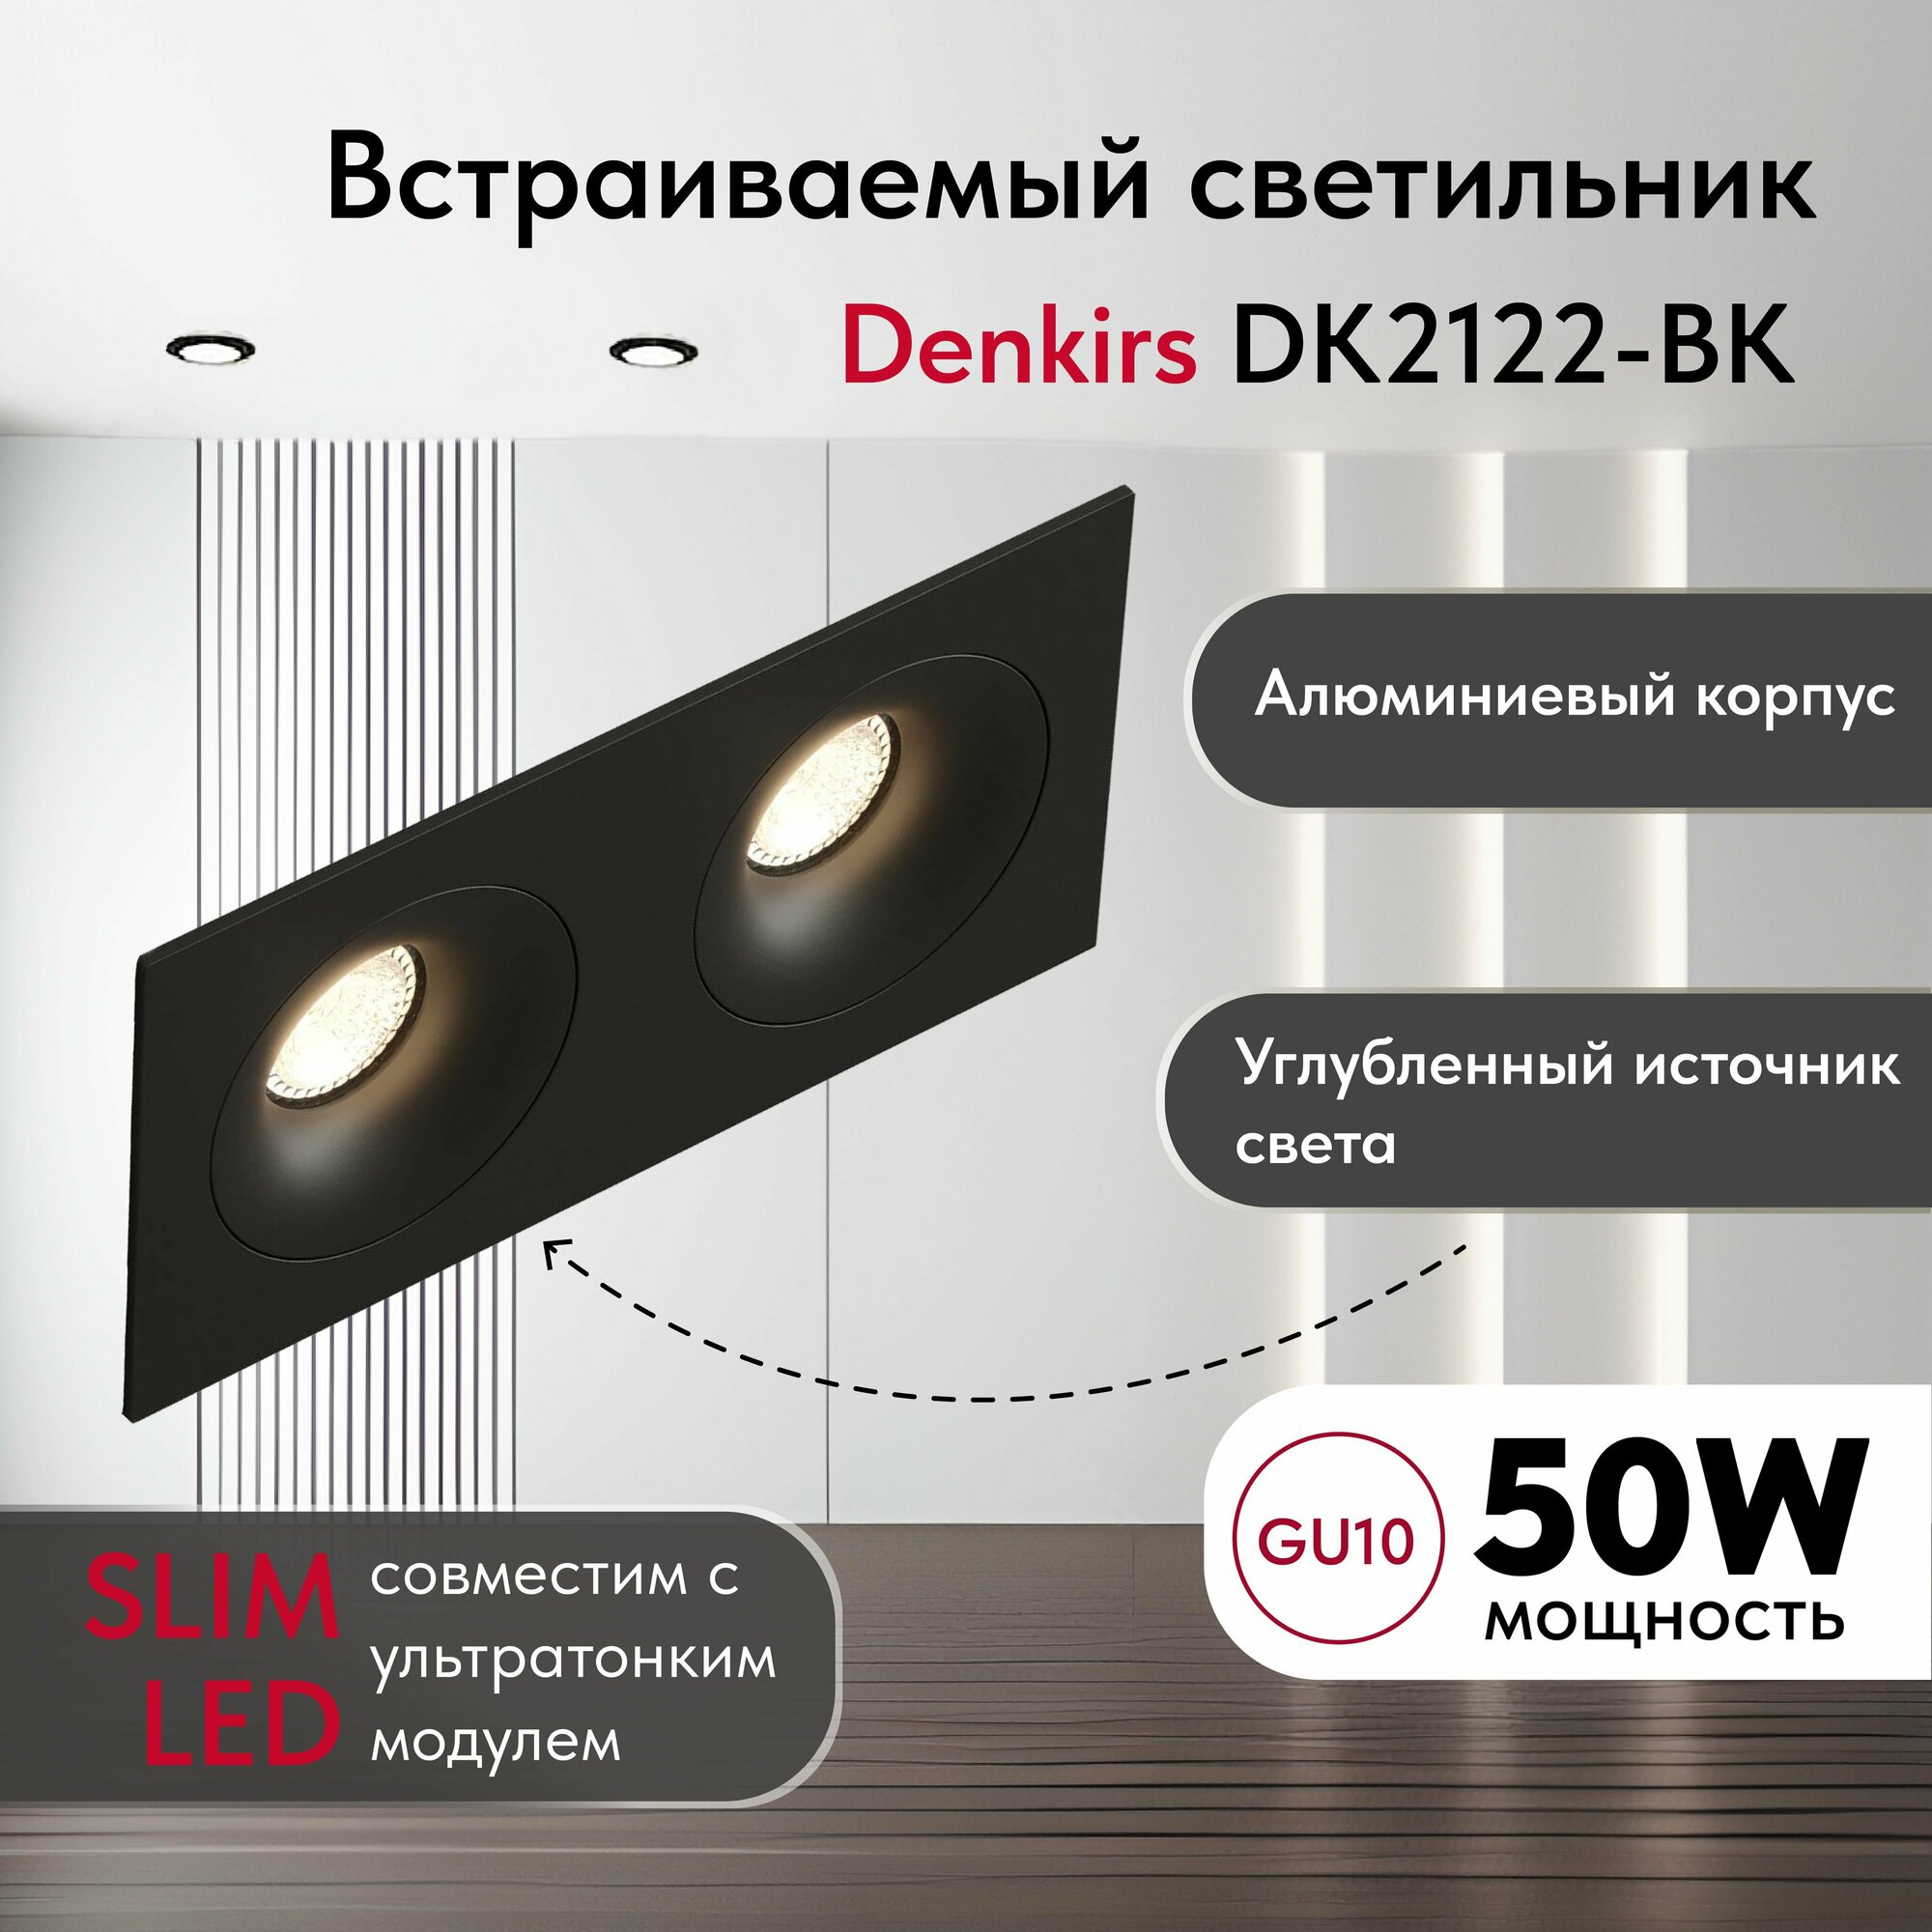 Светильник потолочный встраиваемый DENKIRS DK2122-BK, IP 20, 50 Вт, GU10, белый, алюминий